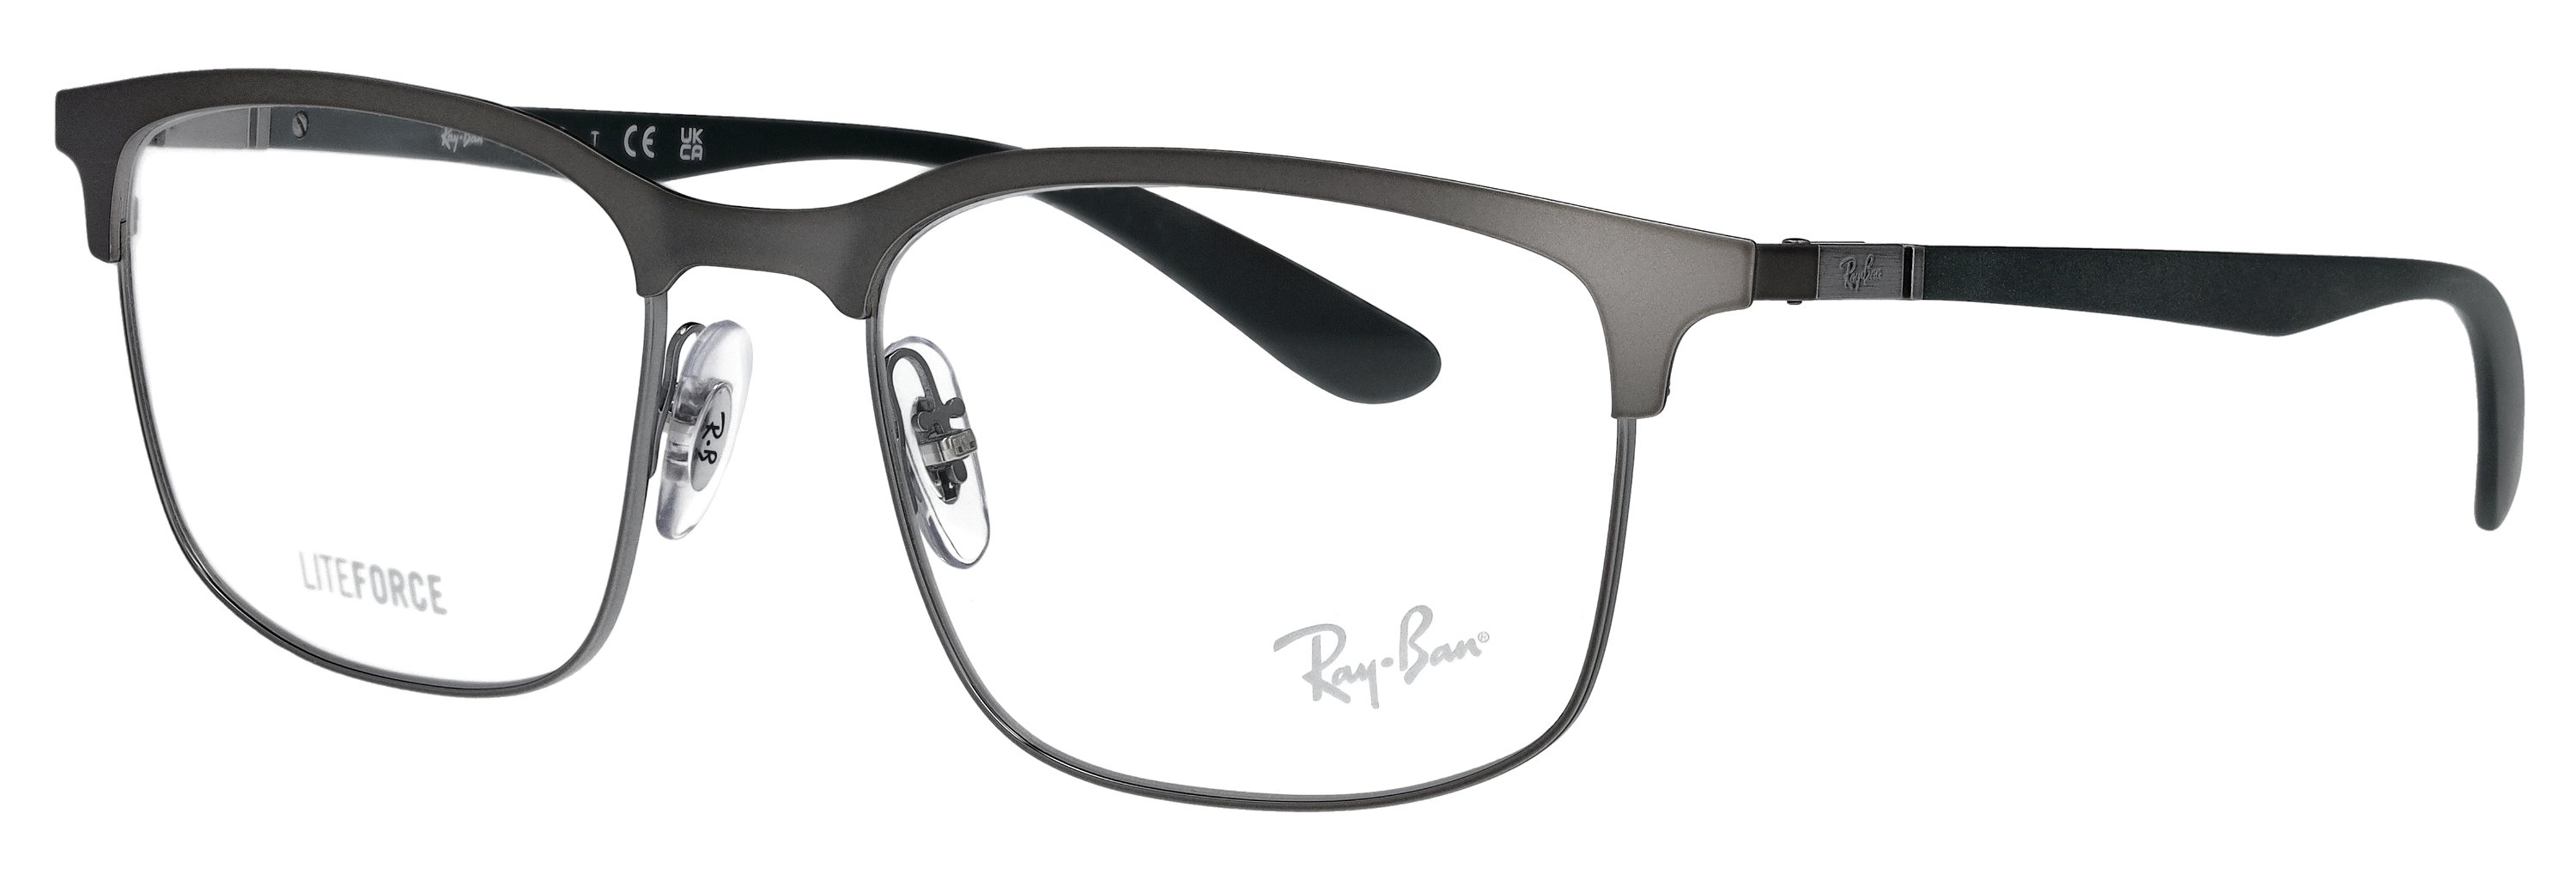 Das Bild zeigt die Korrektionsbrille RX6518 2620 von der Marke Ray Ban in gunmetal.